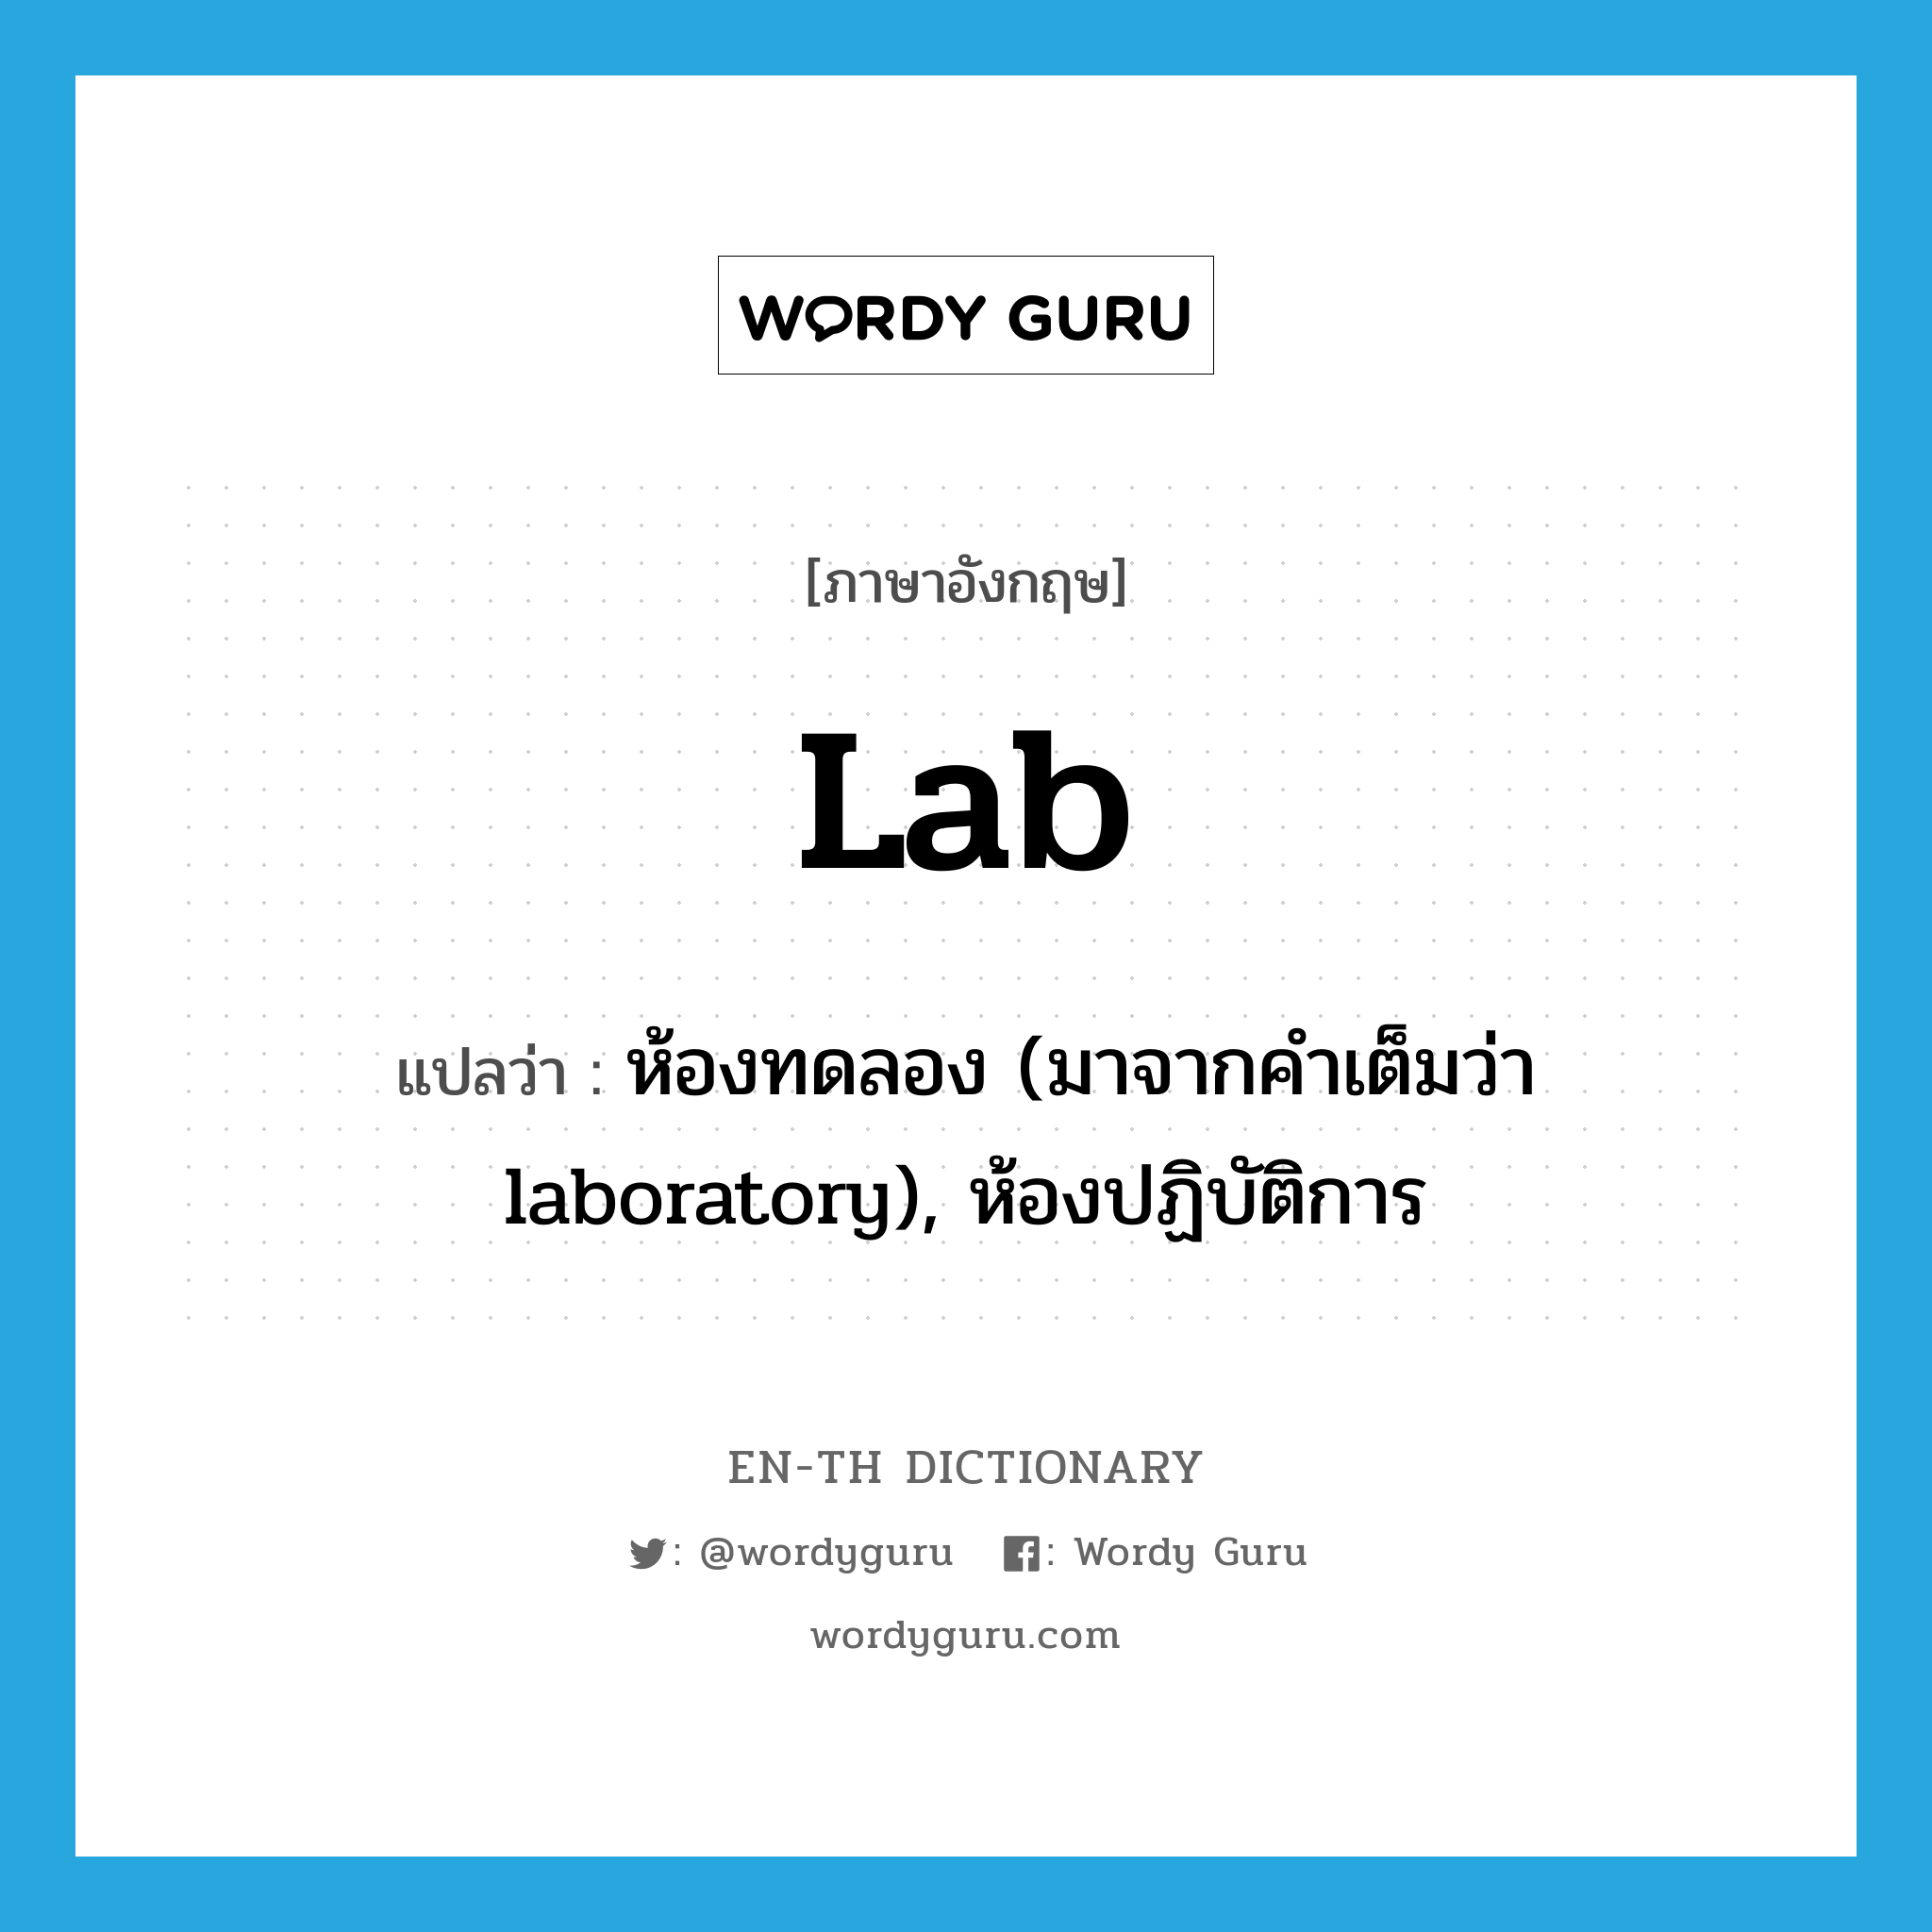 lab แปลว่า?, คำศัพท์ภาษาอังกฤษ lab แปลว่า ห้องทดลอง (มาจากคำเต็มว่า laboratory), ห้องปฏิบัติการ ประเภท N หมวด N